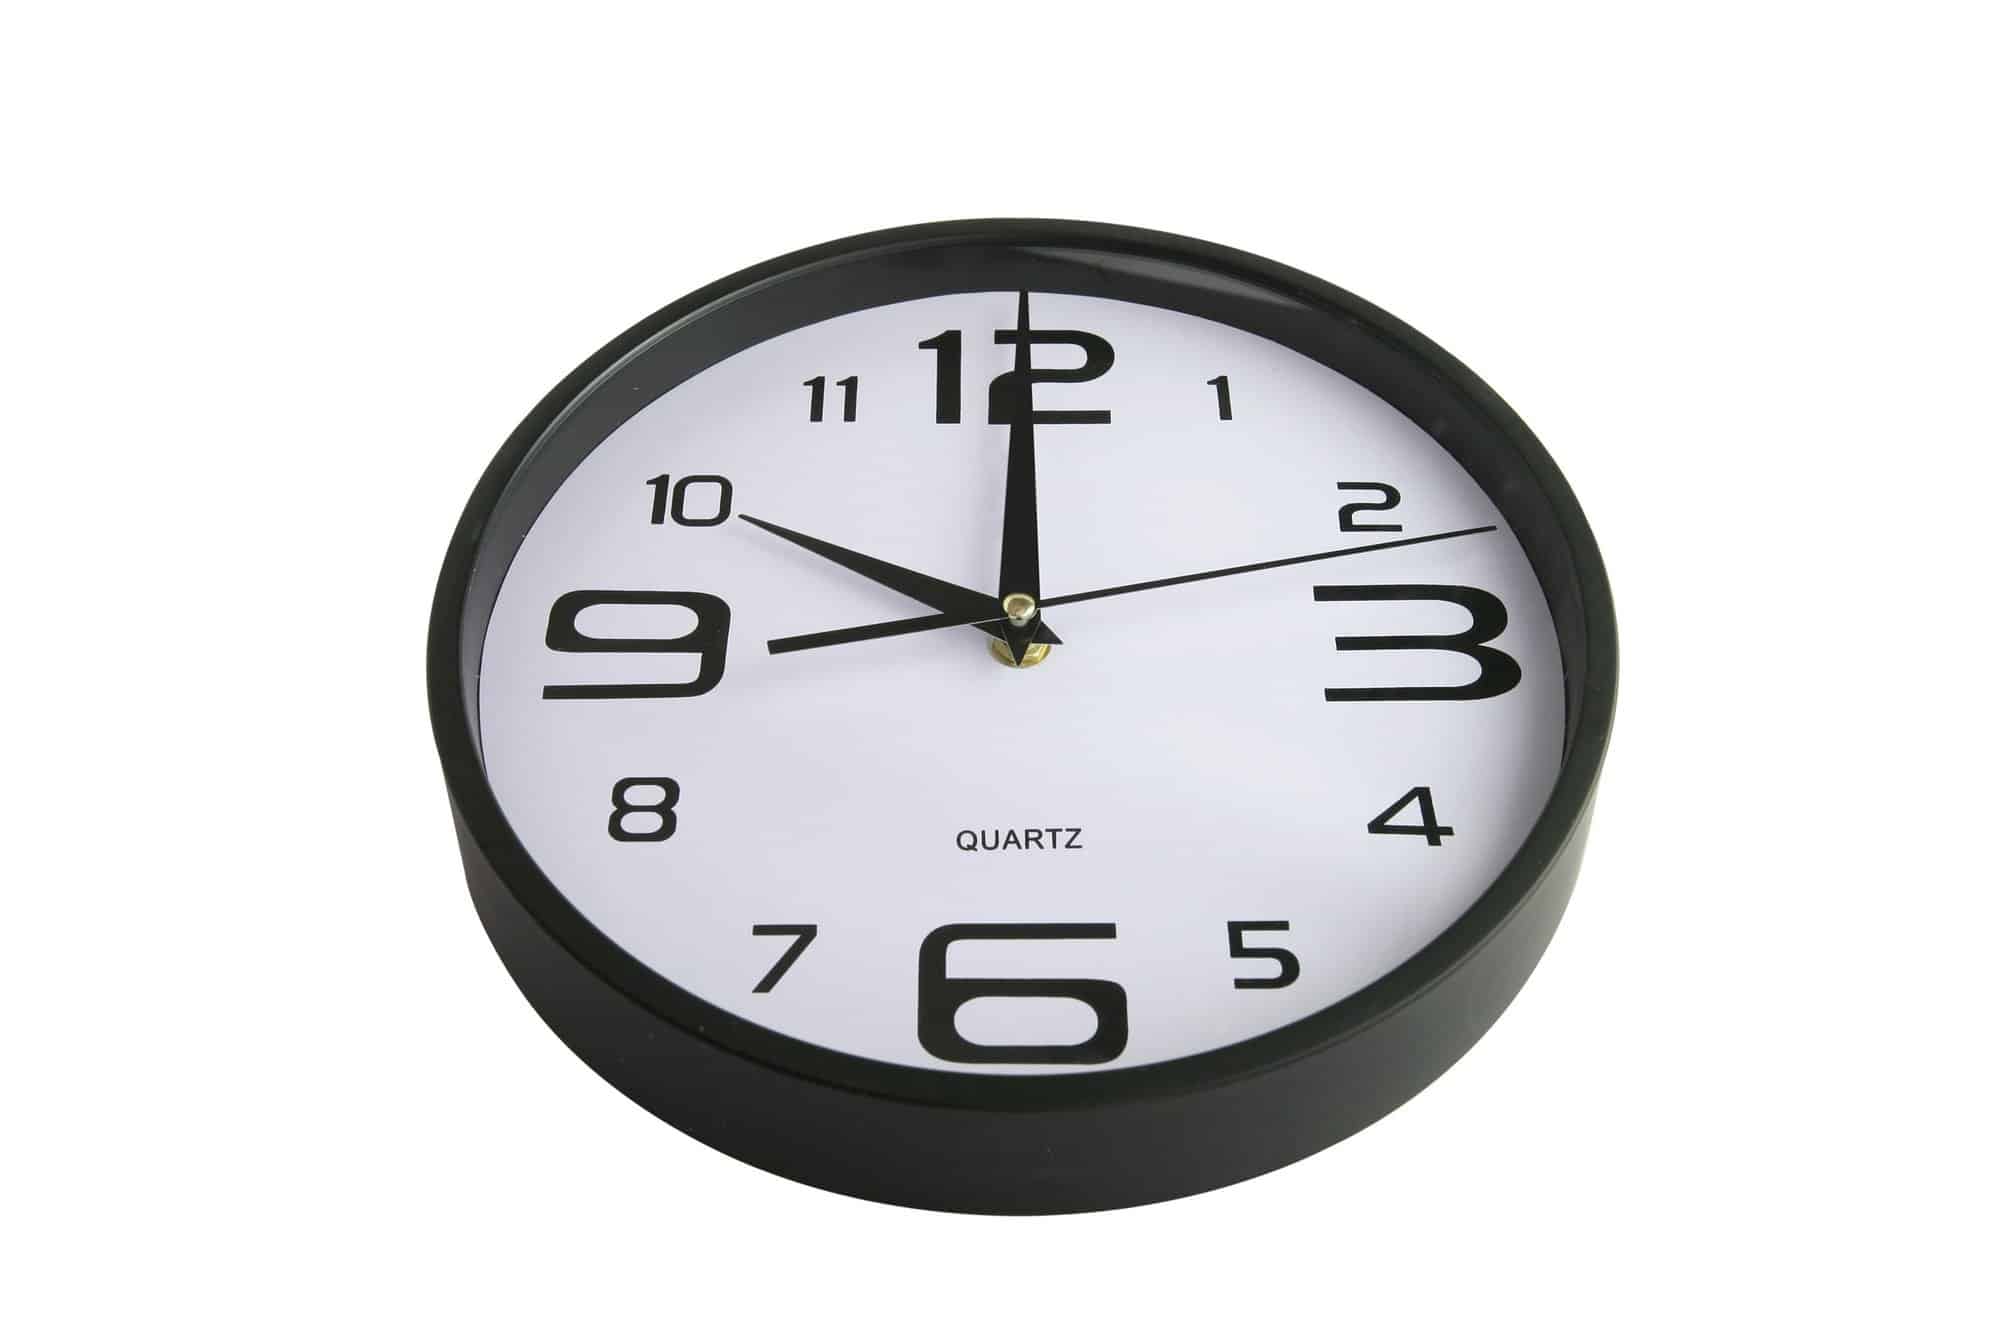 Clock showing ten o'clock